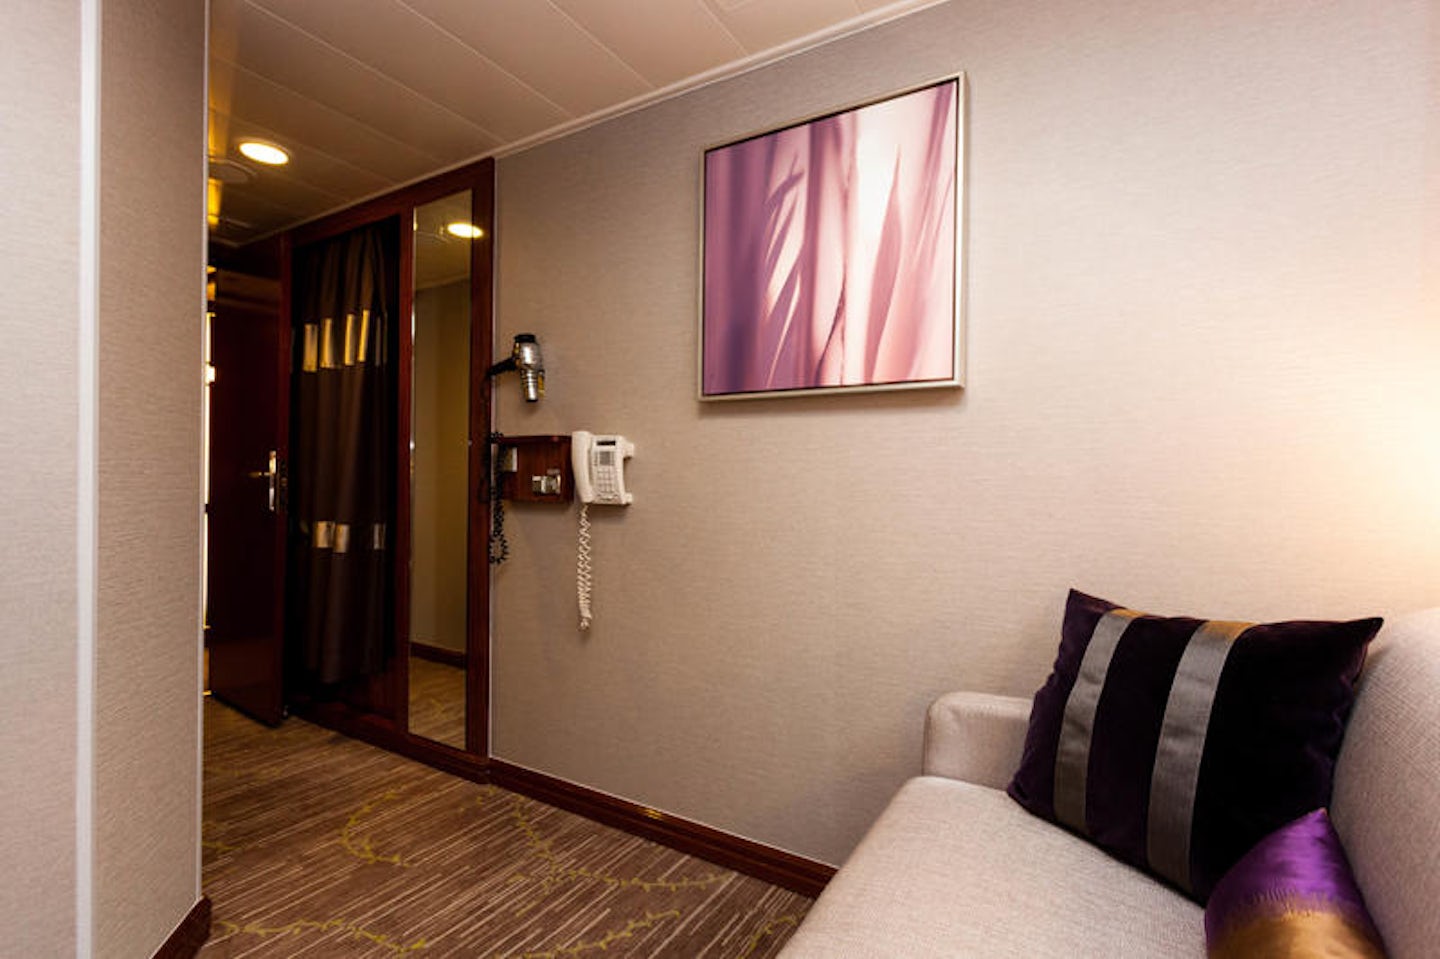 Two-Bedroom Family Suite on Norwegian Jade